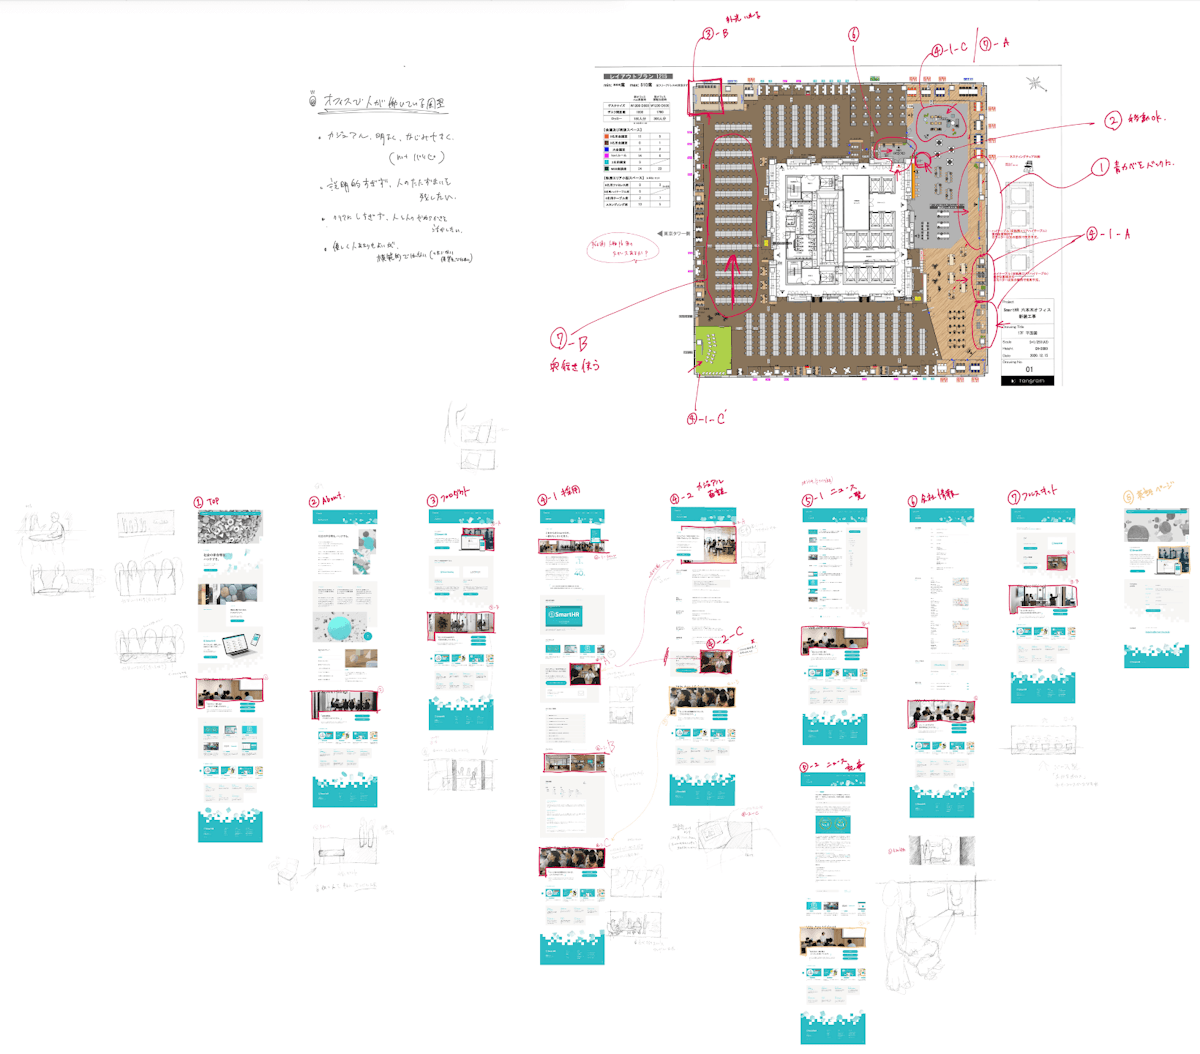 上半分にビルの屋内図、下半分にウェブサイトのデザイン案の画面が並んだ画像。手描きで、無数のラフスケッチや赤文字の指示書きが入っている。